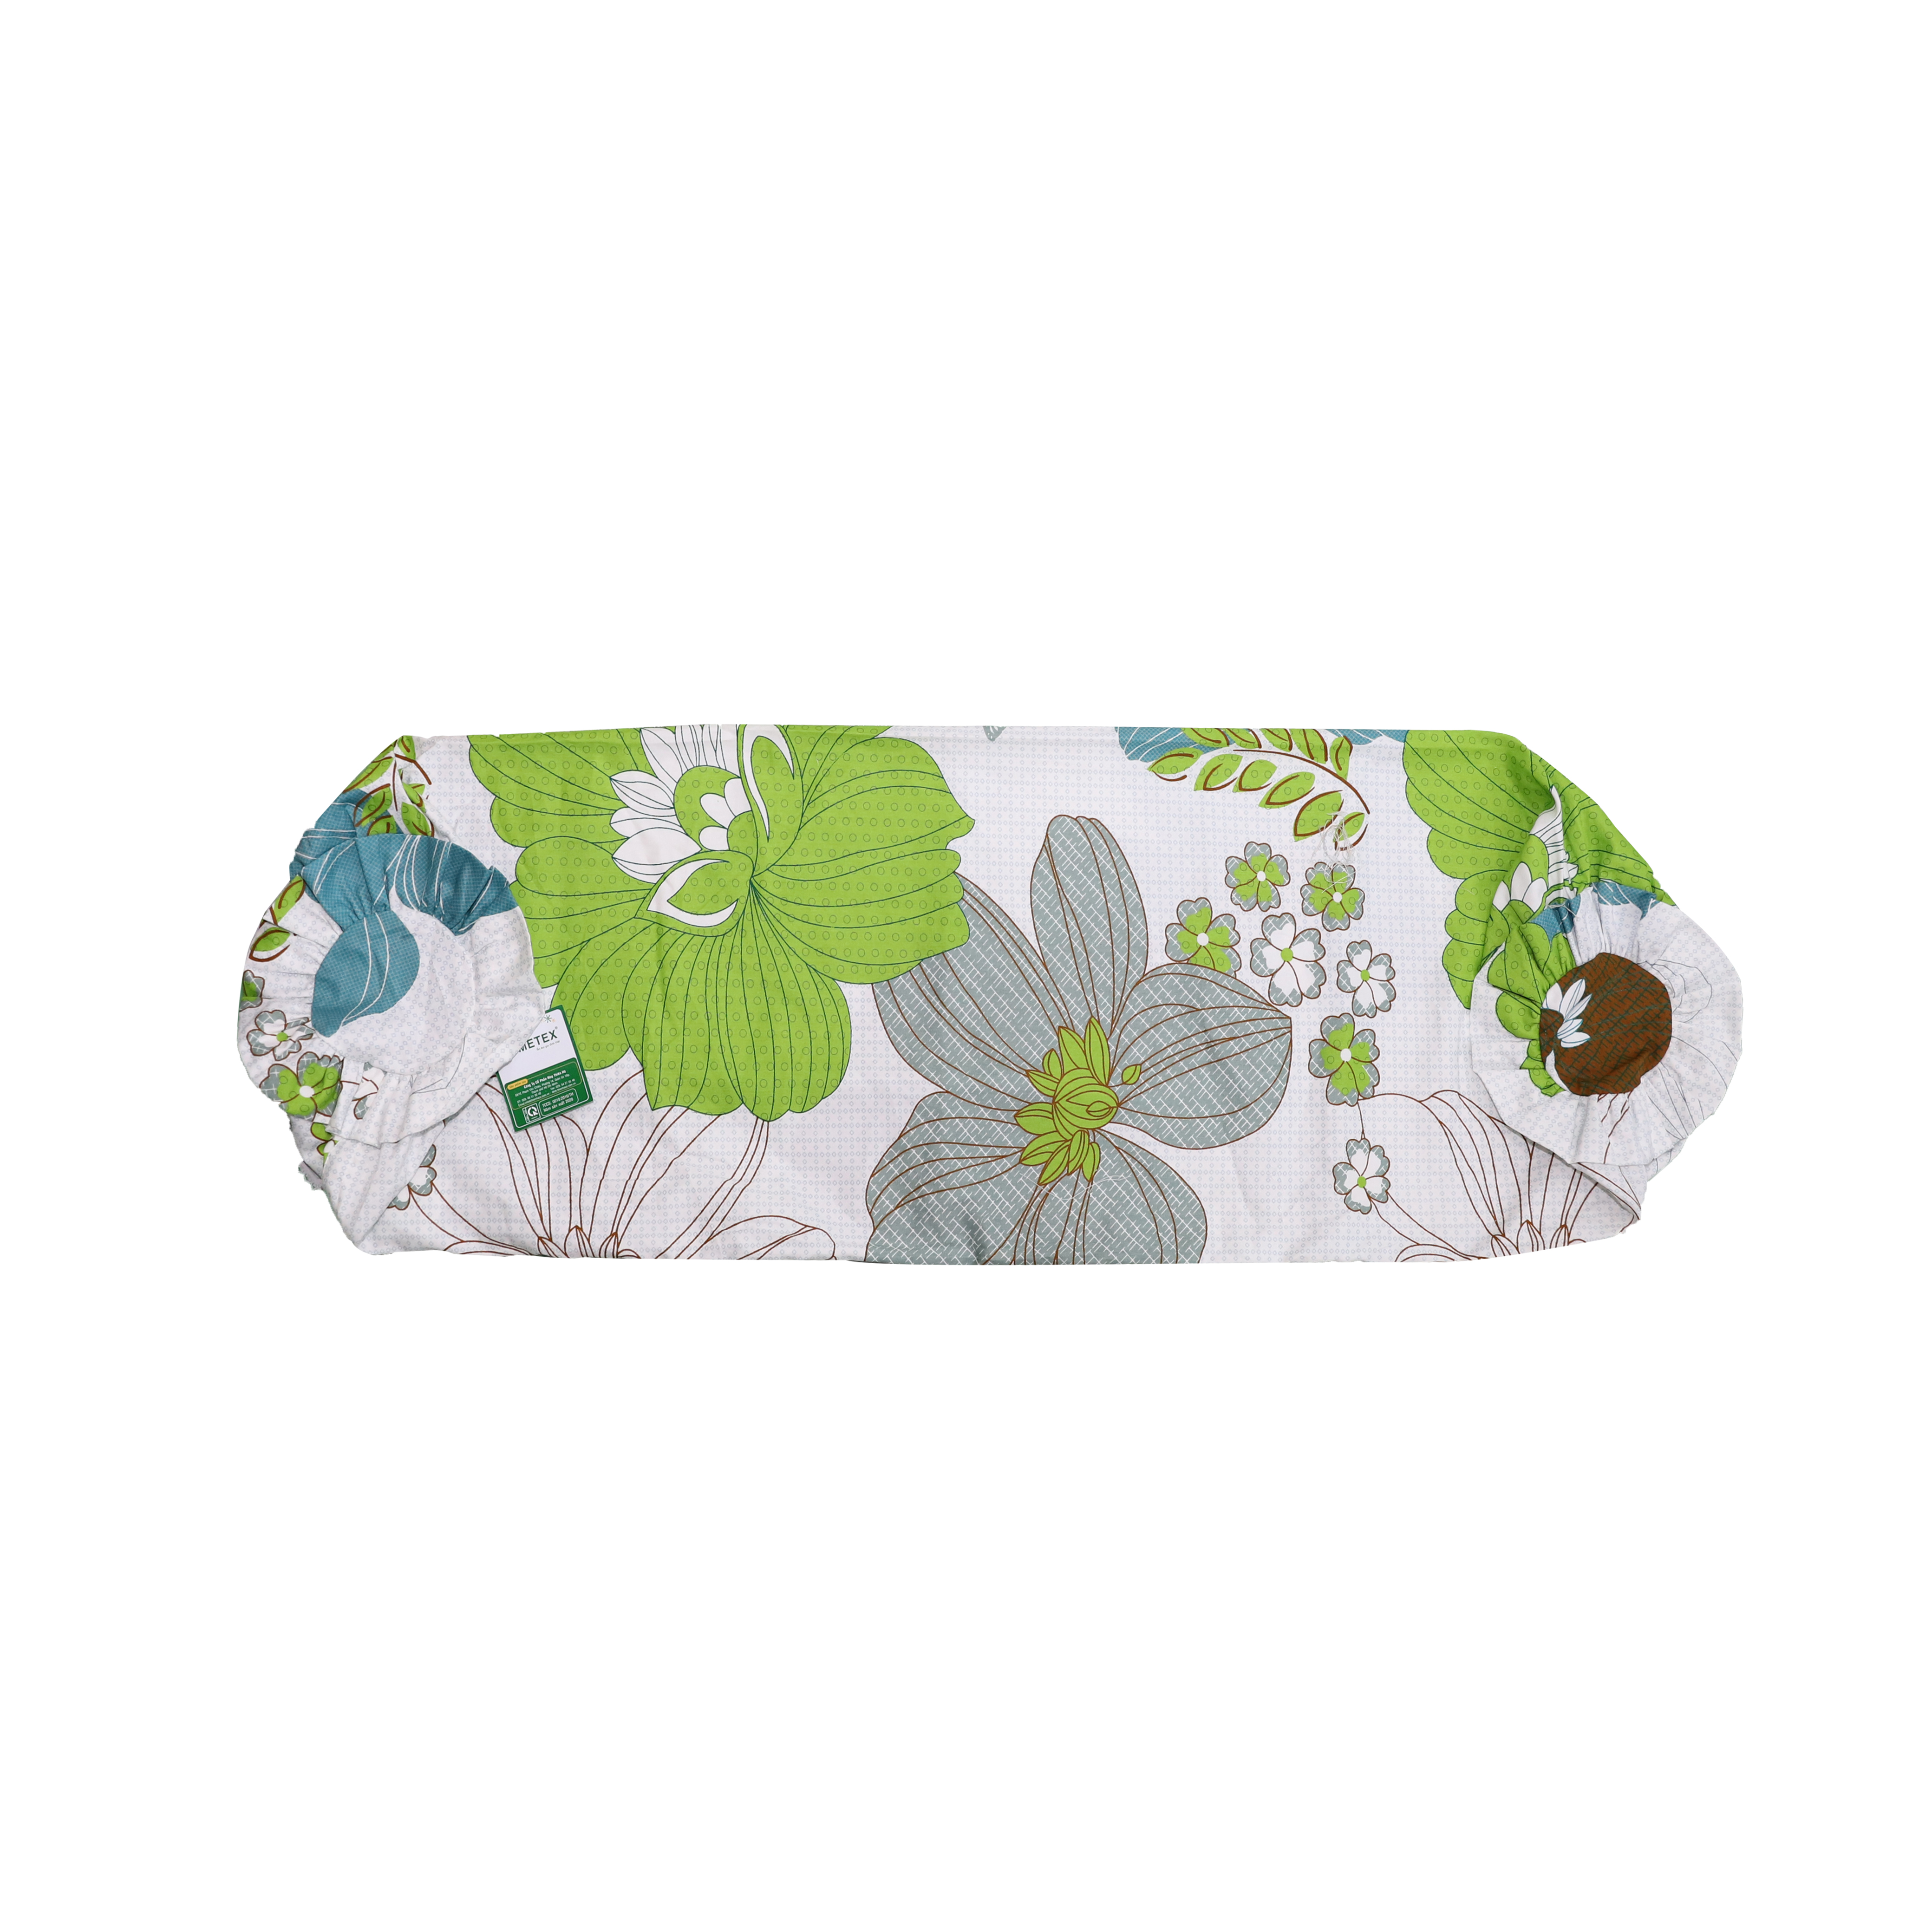 Áo gối ôm dây kéo bèo cotton hoa (37 x 105 cm)- Giao màu ngẫu nhiên